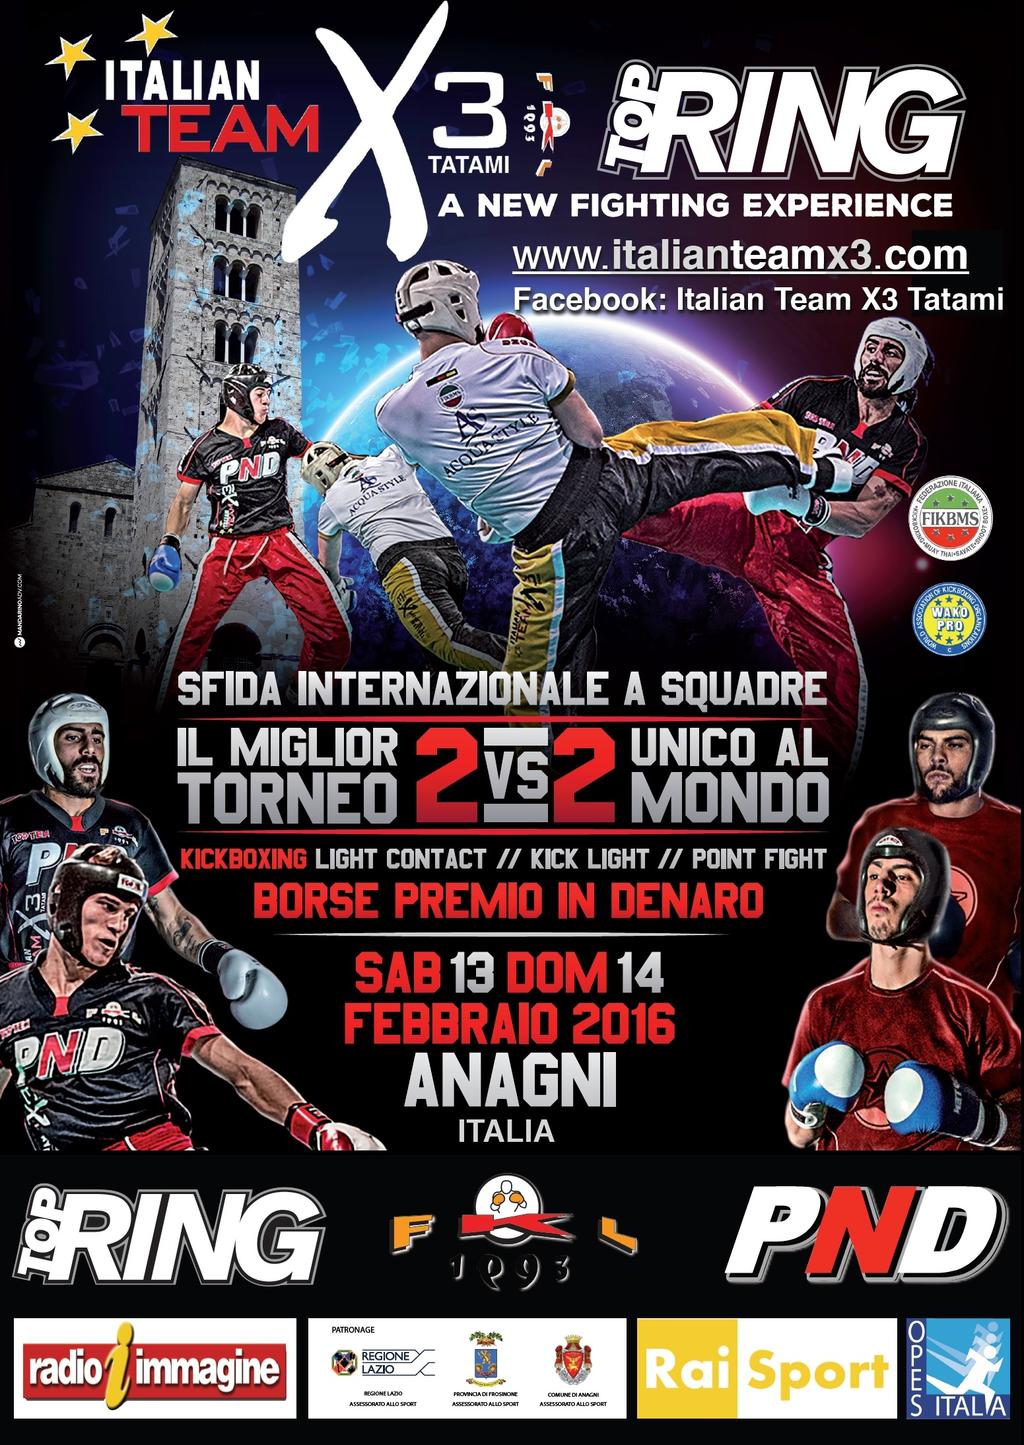 ITALIAN TEAM X3 - PalaSort Anagni 13 e 14 Febbraio 2016 A new fighting experience. Riprese tv su Rai Sport. Cash prize Euro 8.000. Sfida Internazionale kickboxing a squadre 2 vs 2.